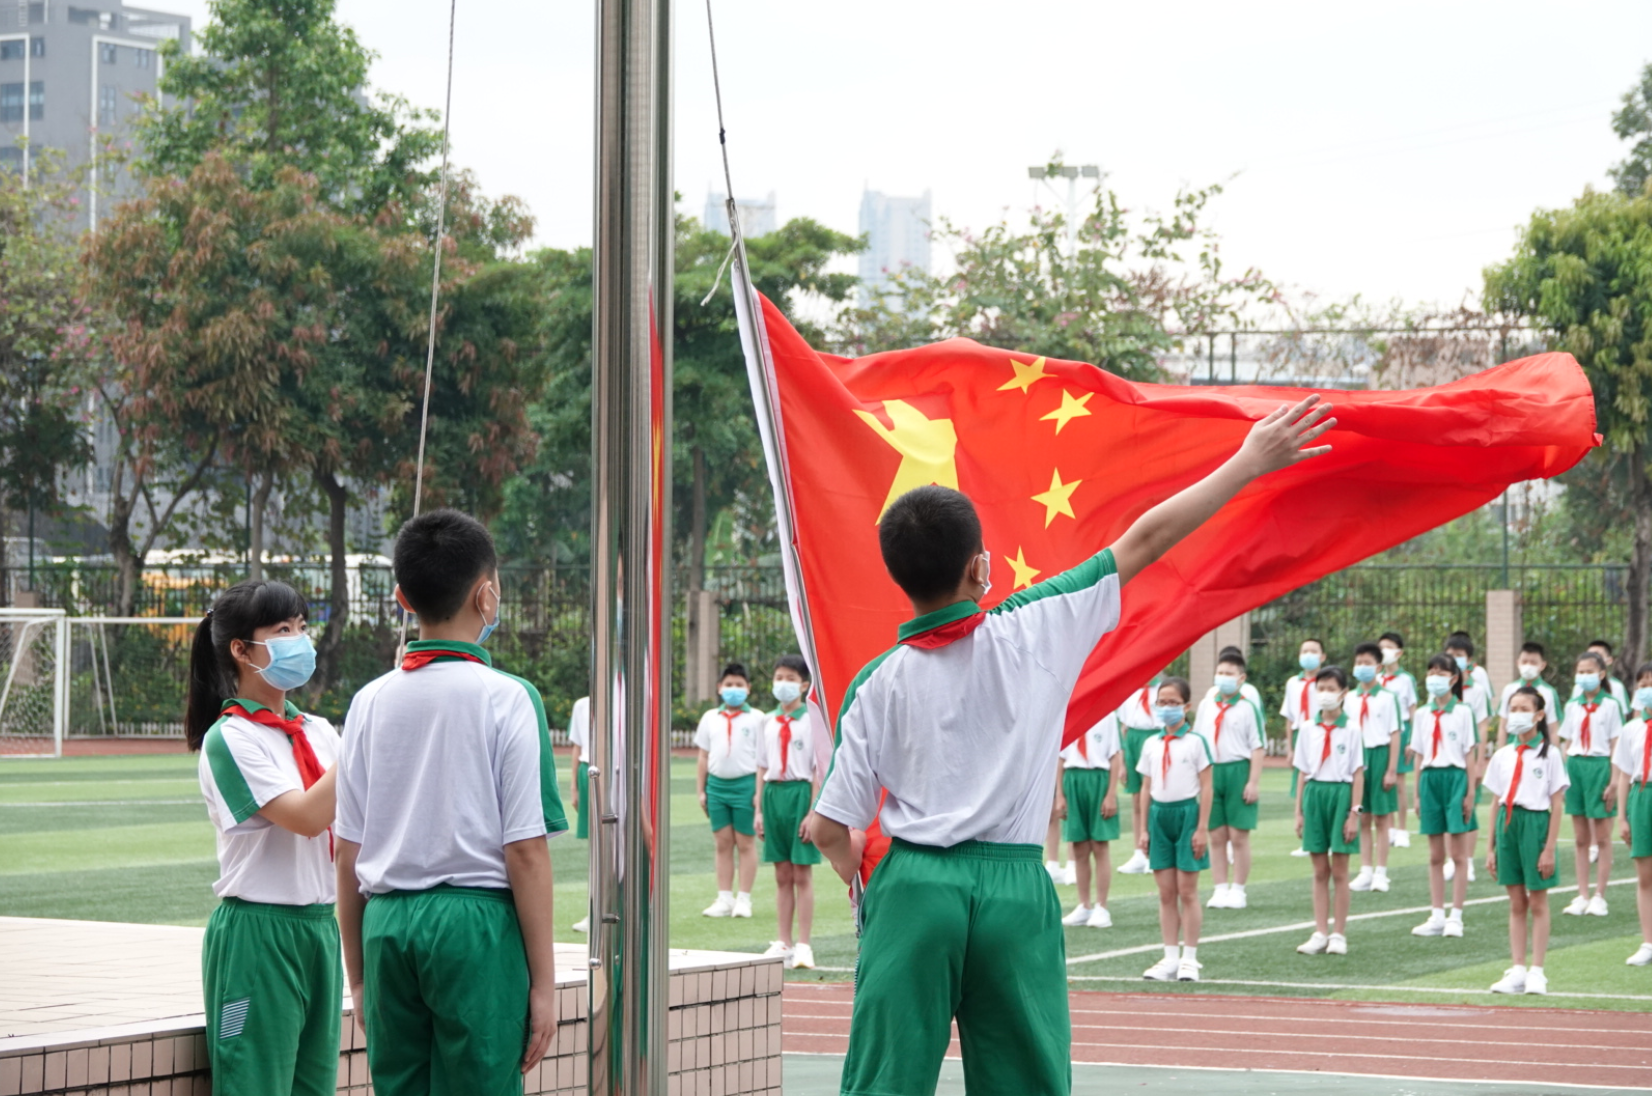 南武实验小学升旗仪式,同学们面向教室内的国旗行注目礼,唱国歌